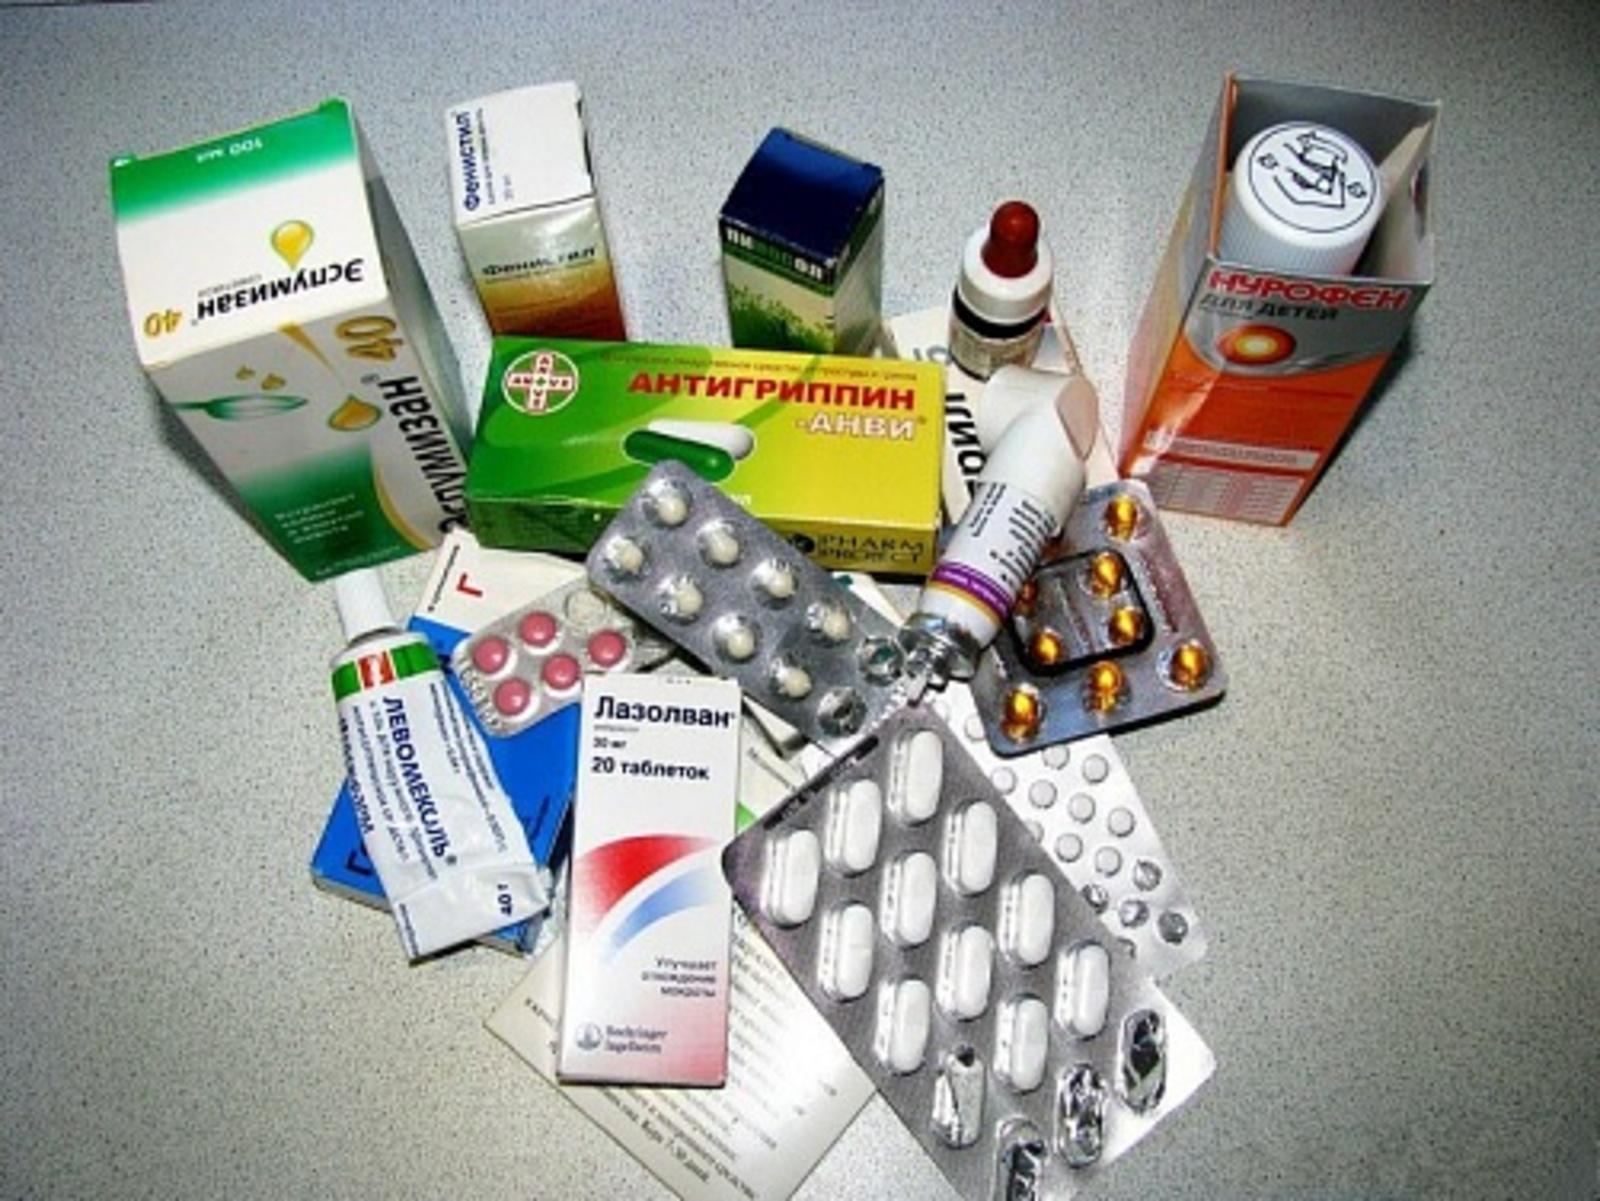 Орви недорогие лекарства. Таблетки от простуды. Препараты от ОРВИ. Набор лекарств от гриппа. Набор препаратов от простуды.